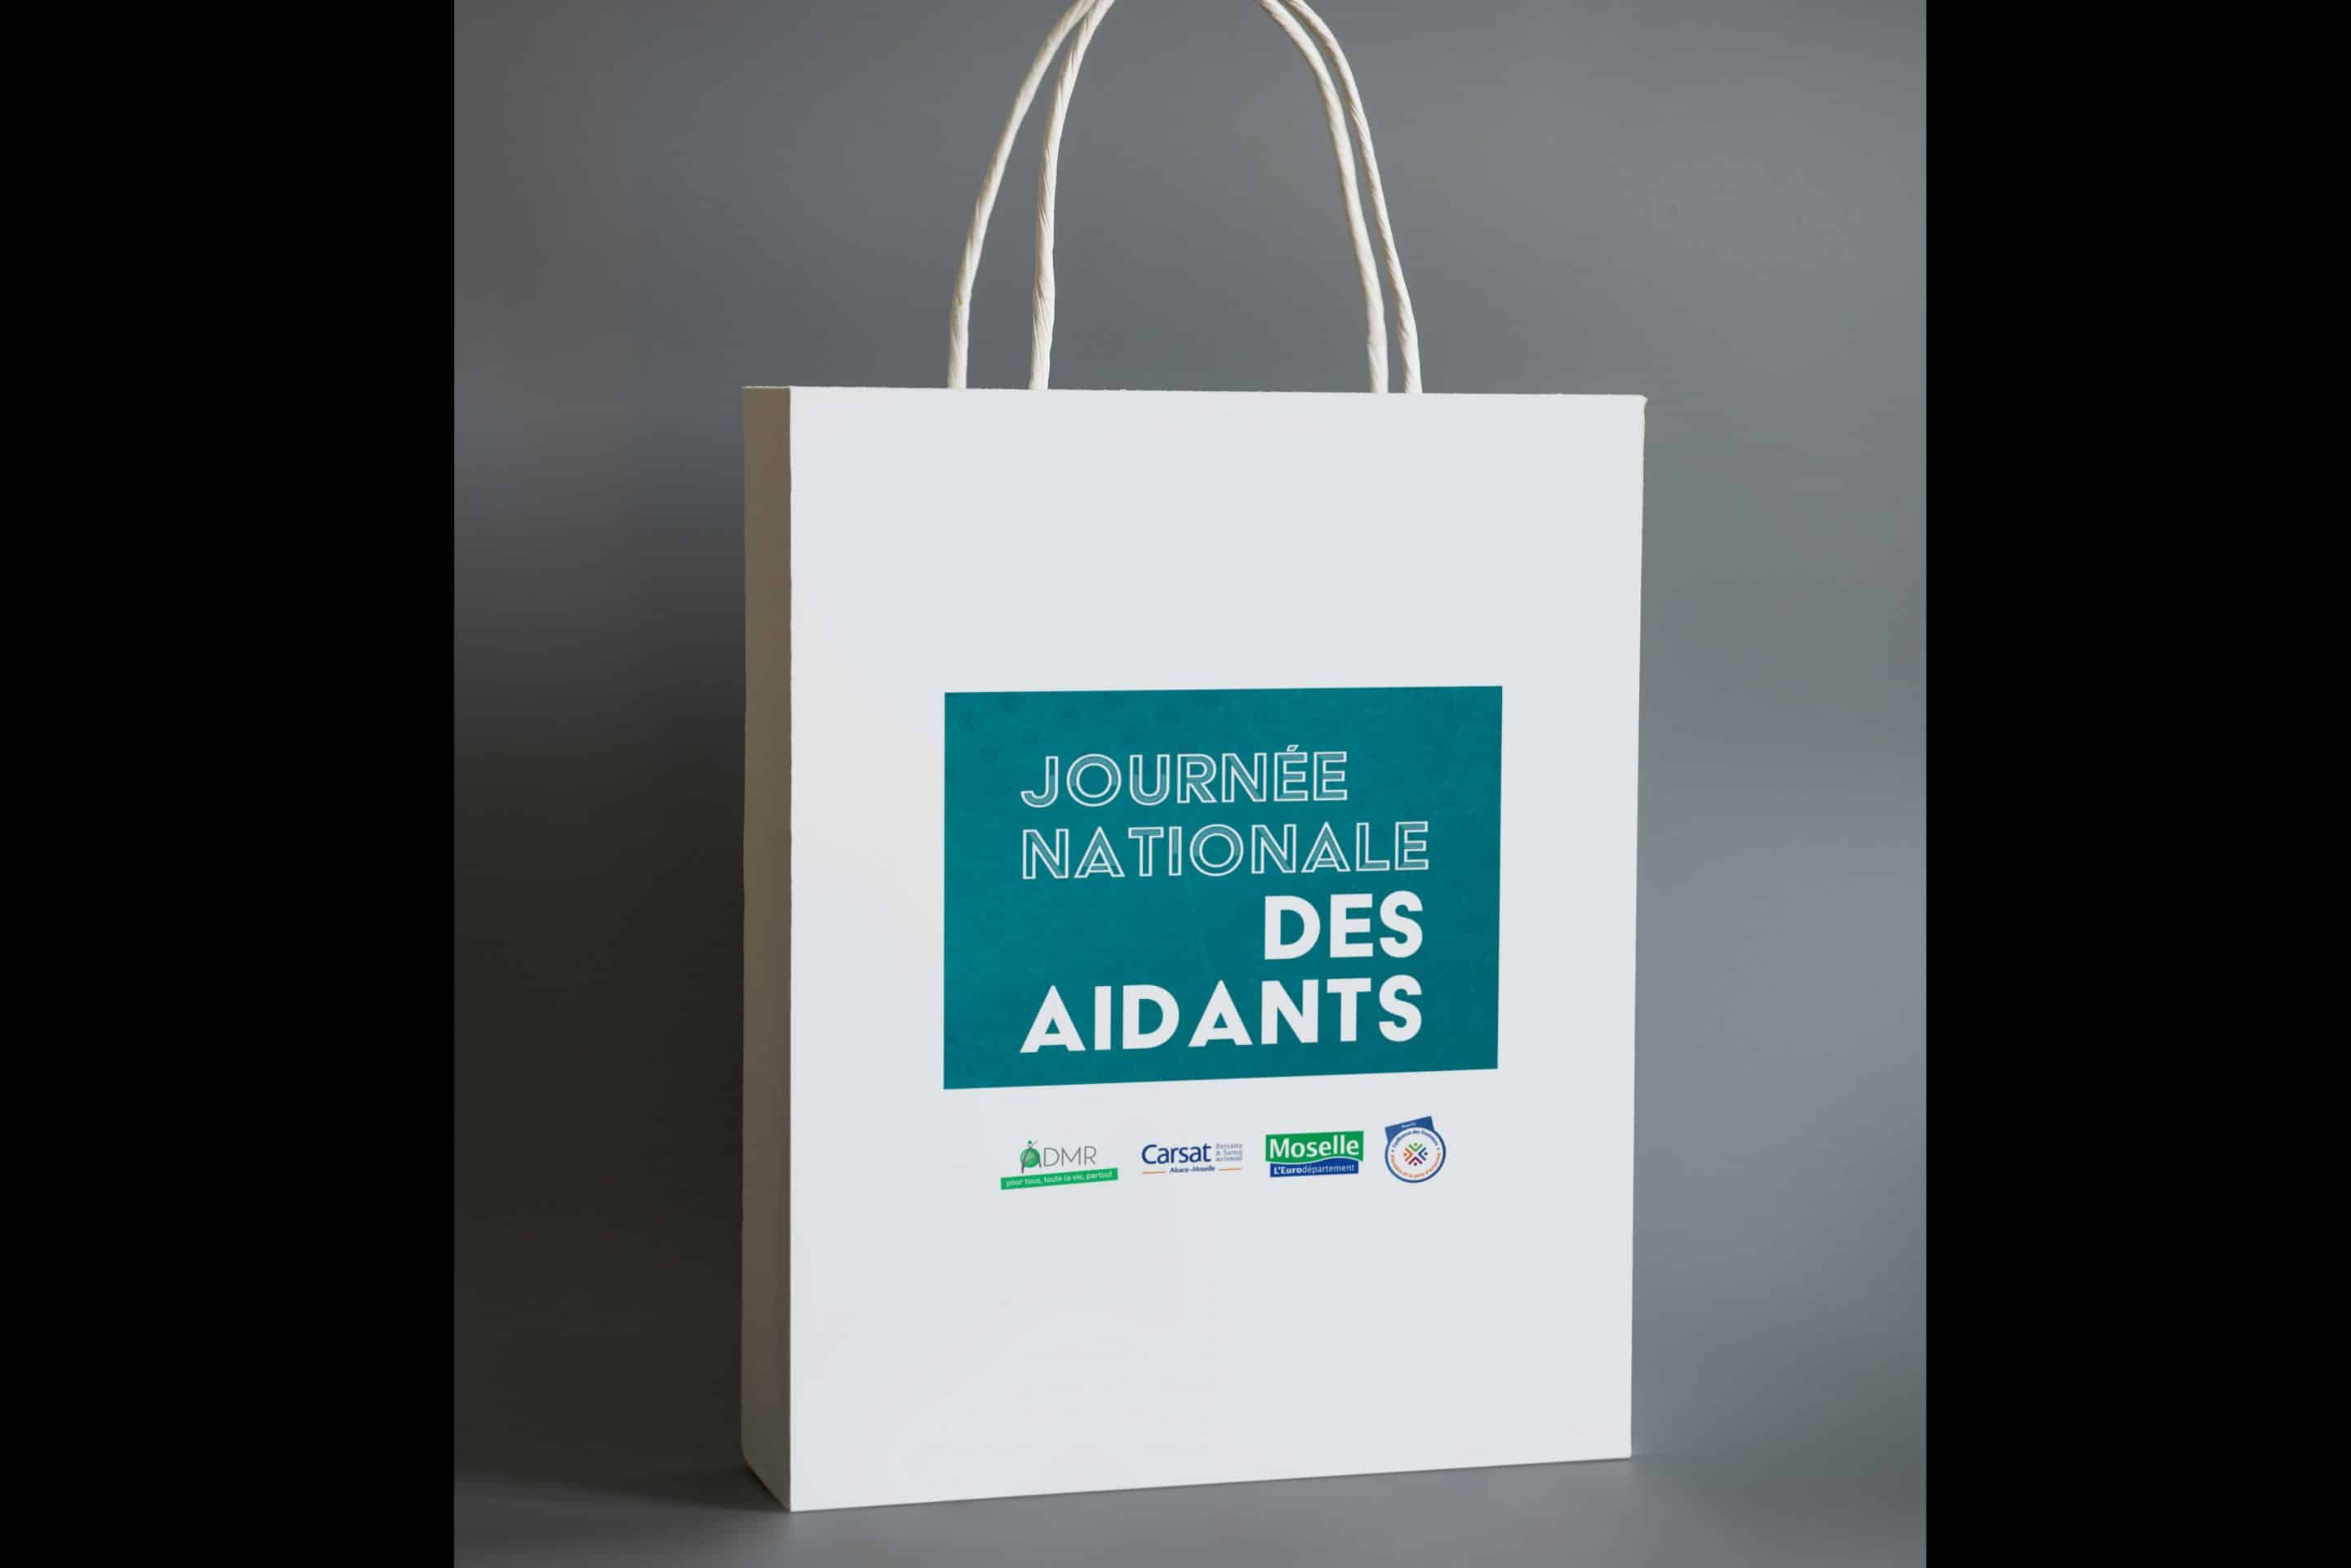 ADMR_JOURNEE_DES-AIDANTS_SAC_1-scaled Projets & Références